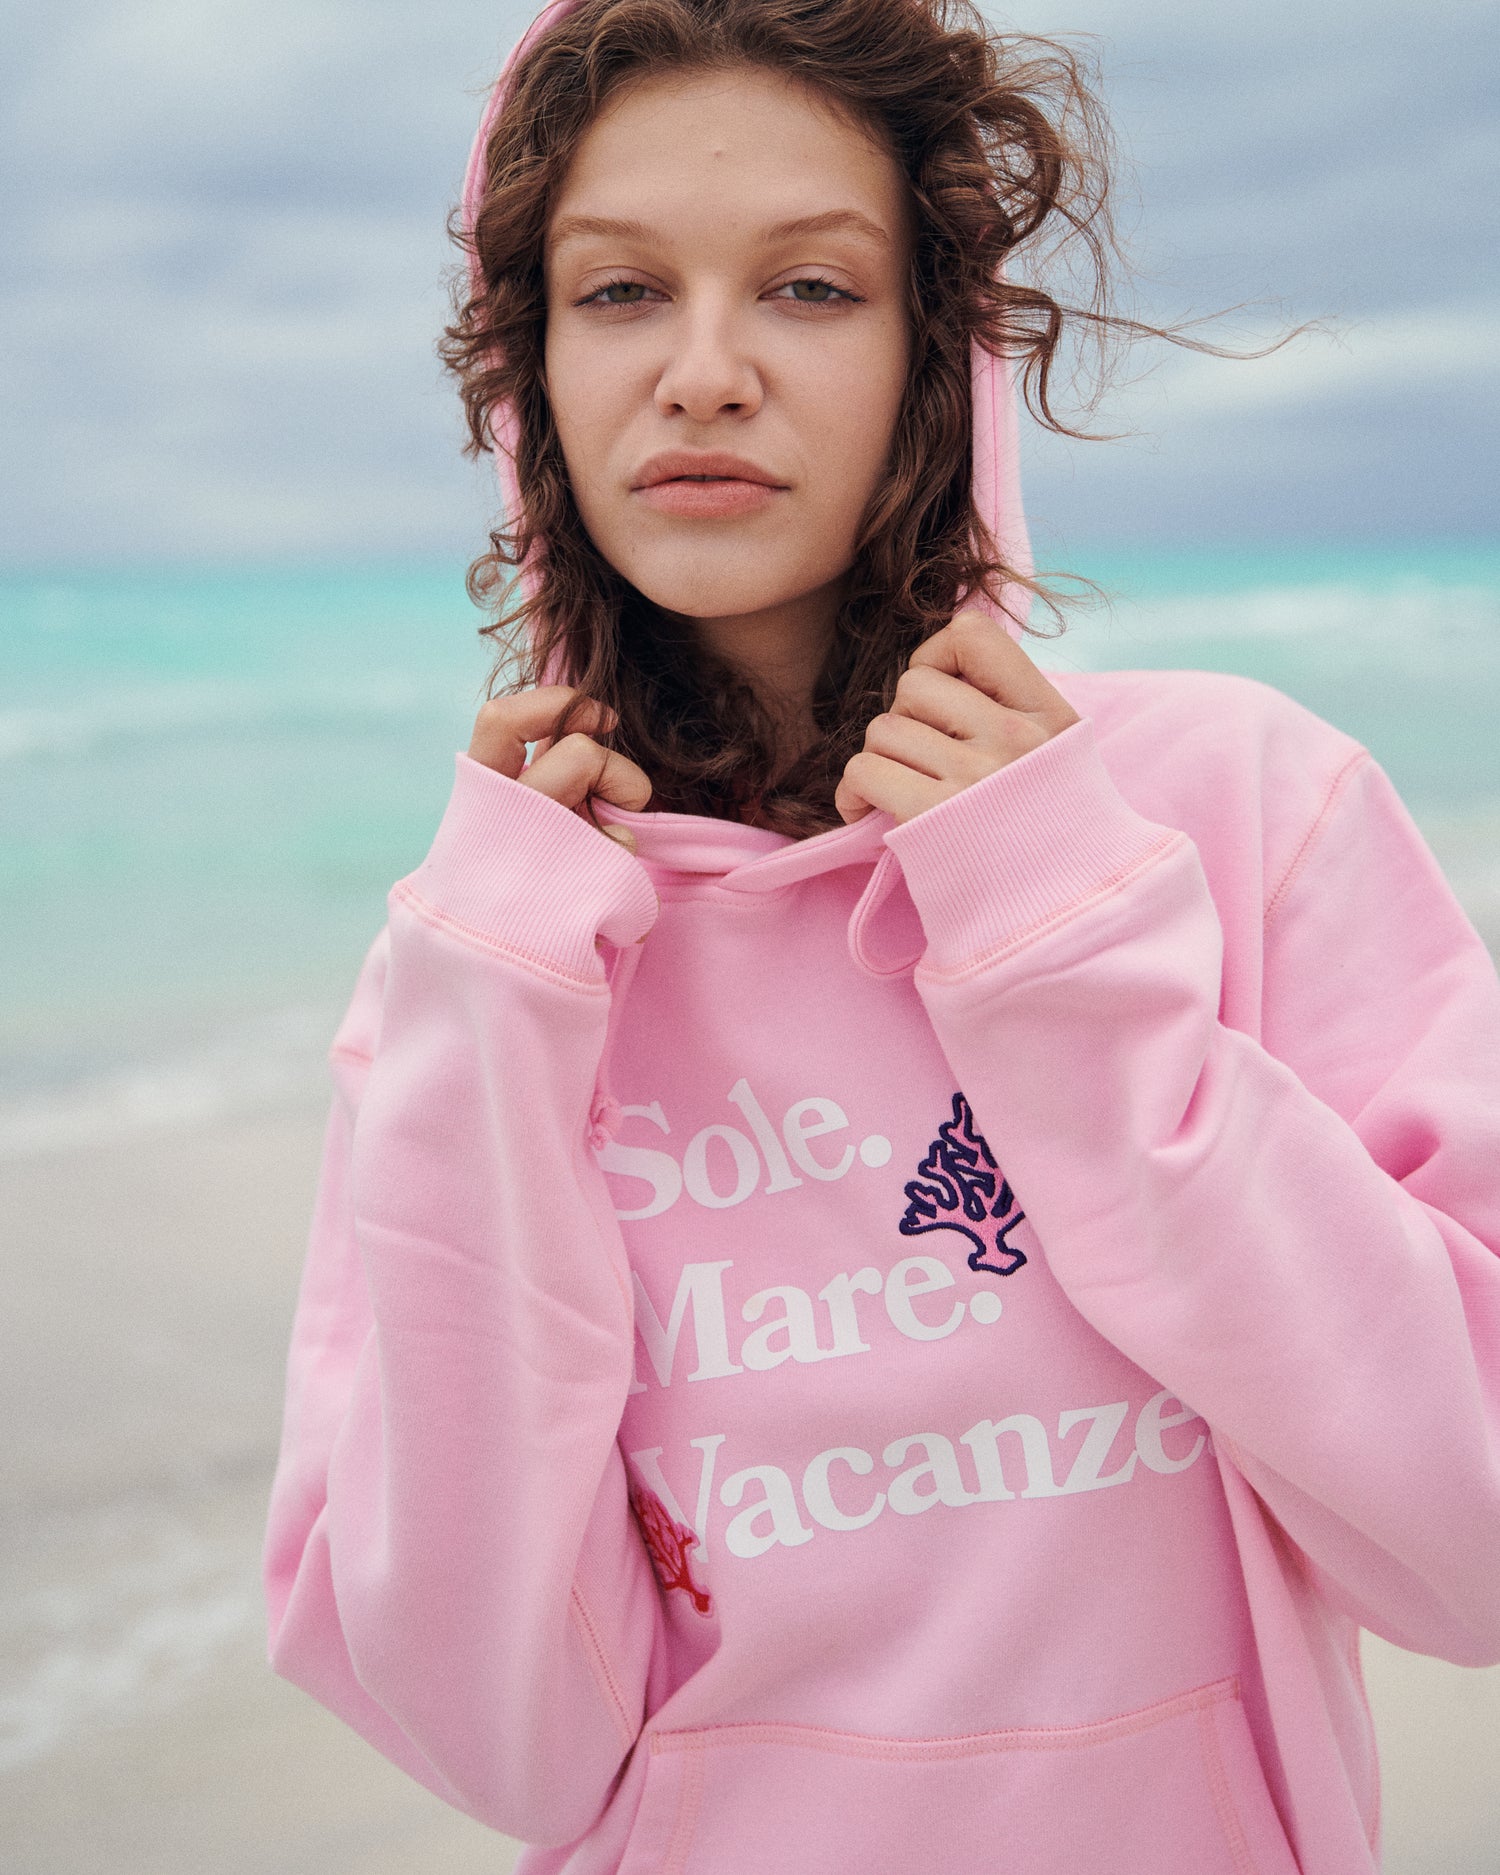 Różowa bluza z kapturem Sole Mare Vacanze. Rafa koralowa daje jej tropikalny vibe. La dolce vita i felicita!Sprawdzi się świetnie na każdy wyjazd wakacyjny! Wakacje na Helu. 